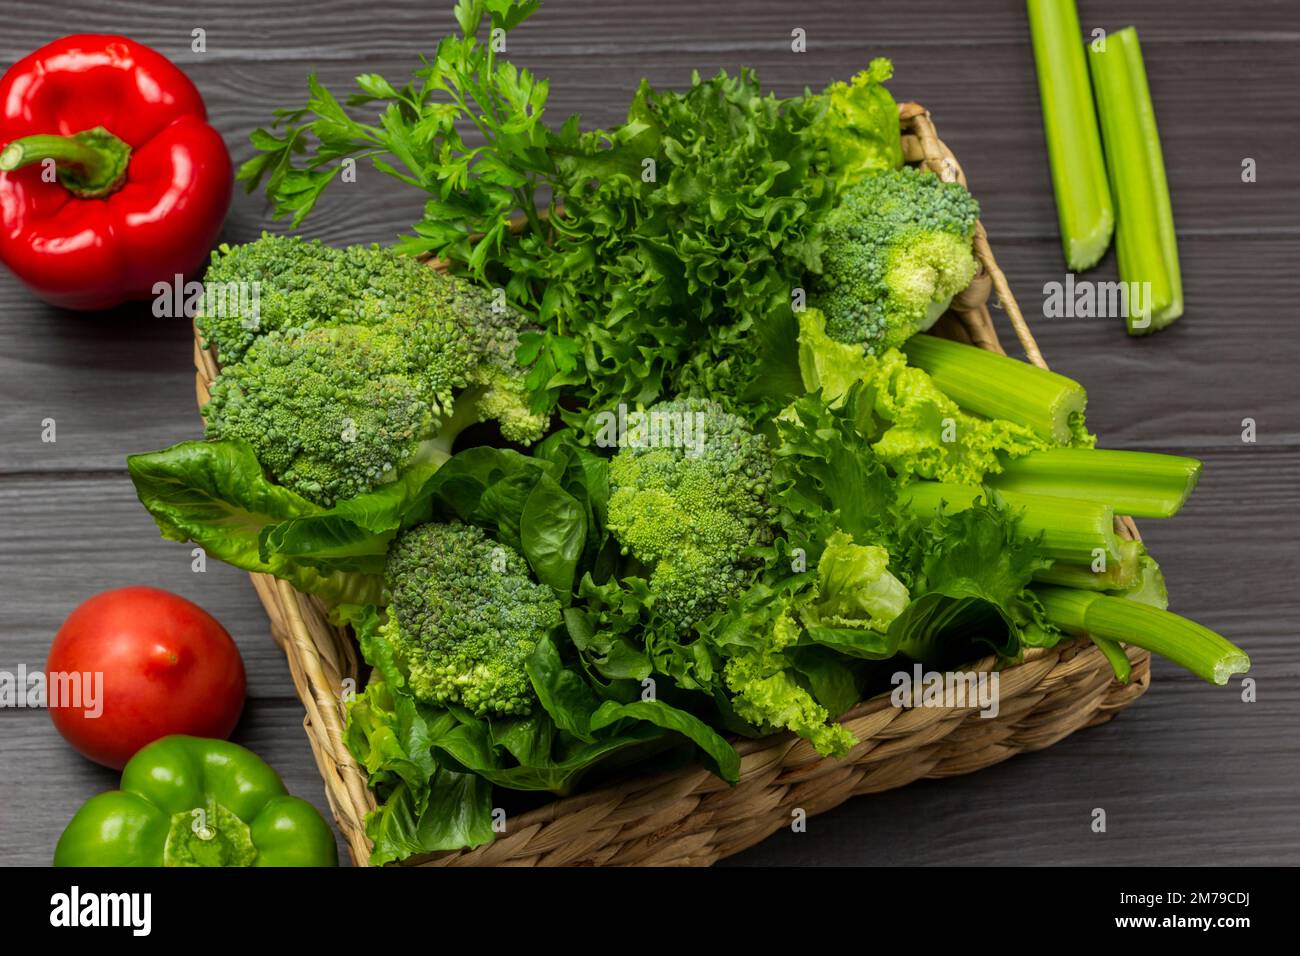 Grünes Gemüse in einem Korb. Tomaten und Paprika auf dem Tisch. Draufsicht. Dunkler Holzhintergrund. Stockfoto